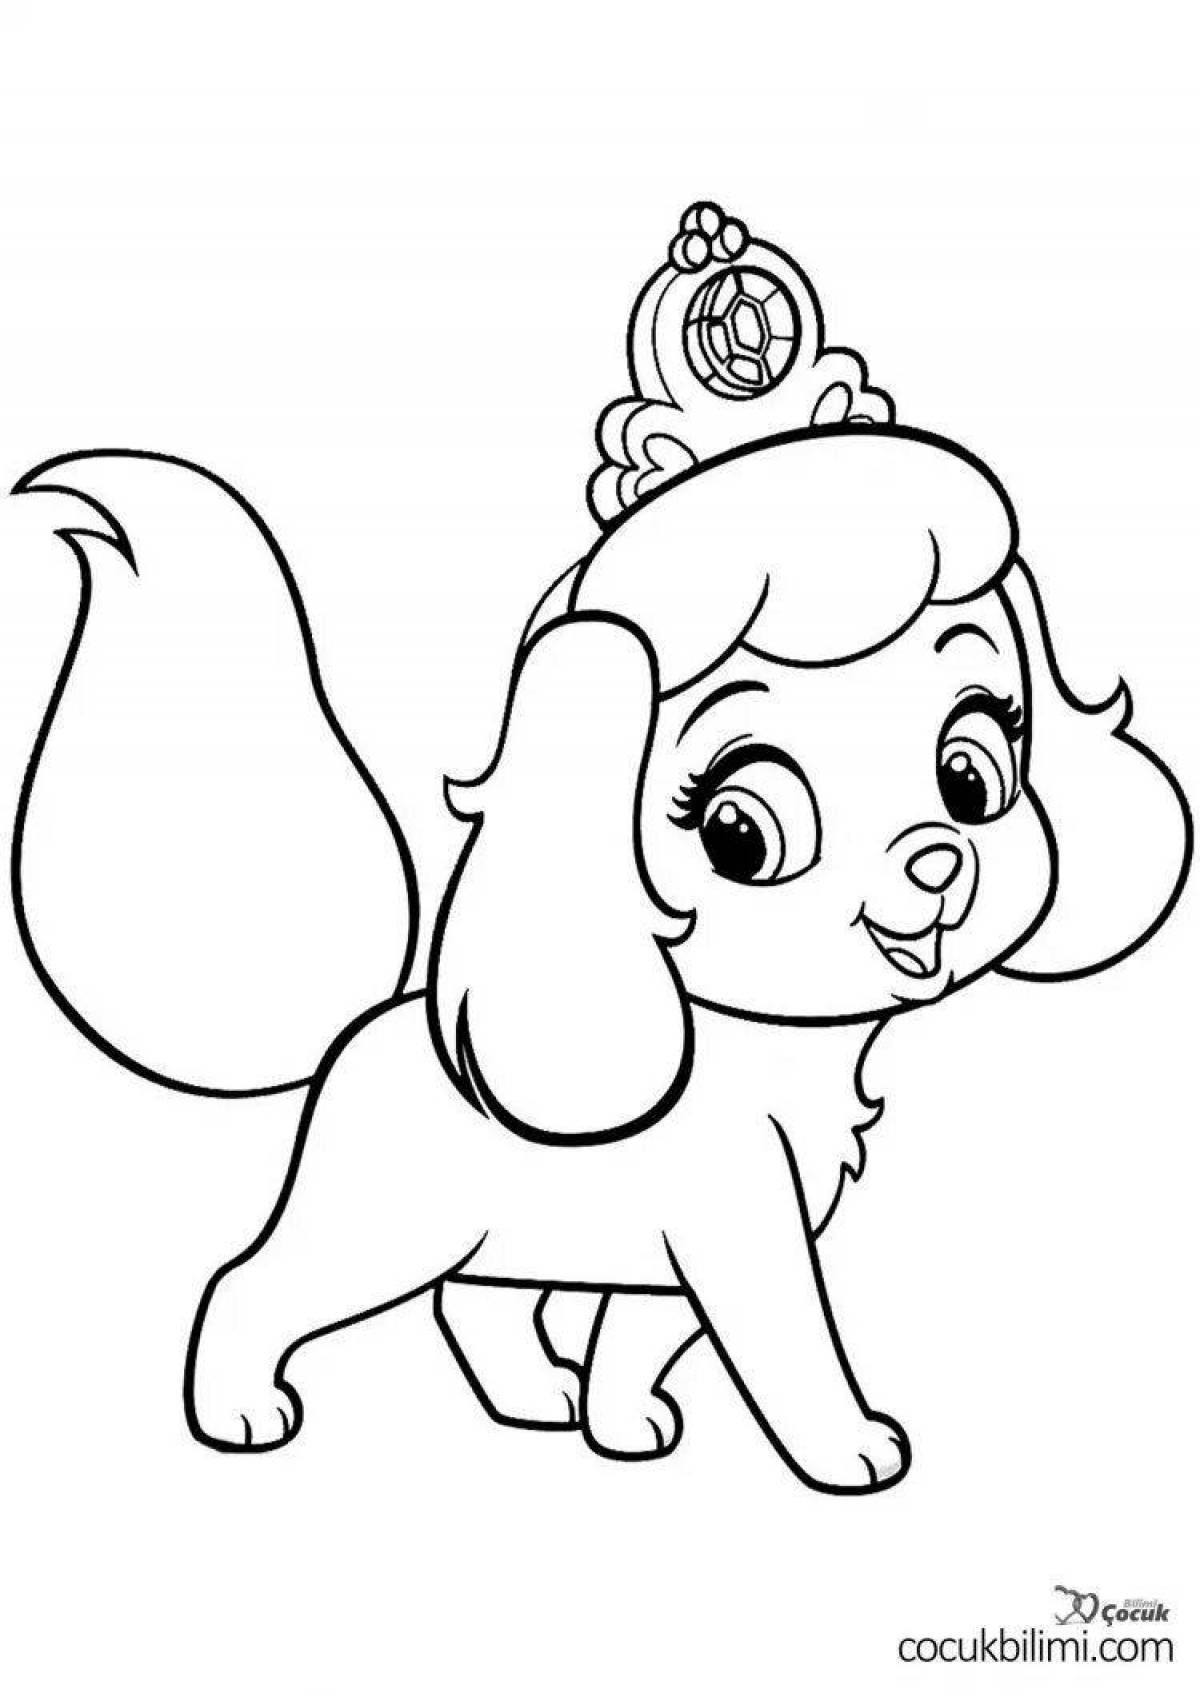 Яркая собачка-раскраска для детей 5-6 лет